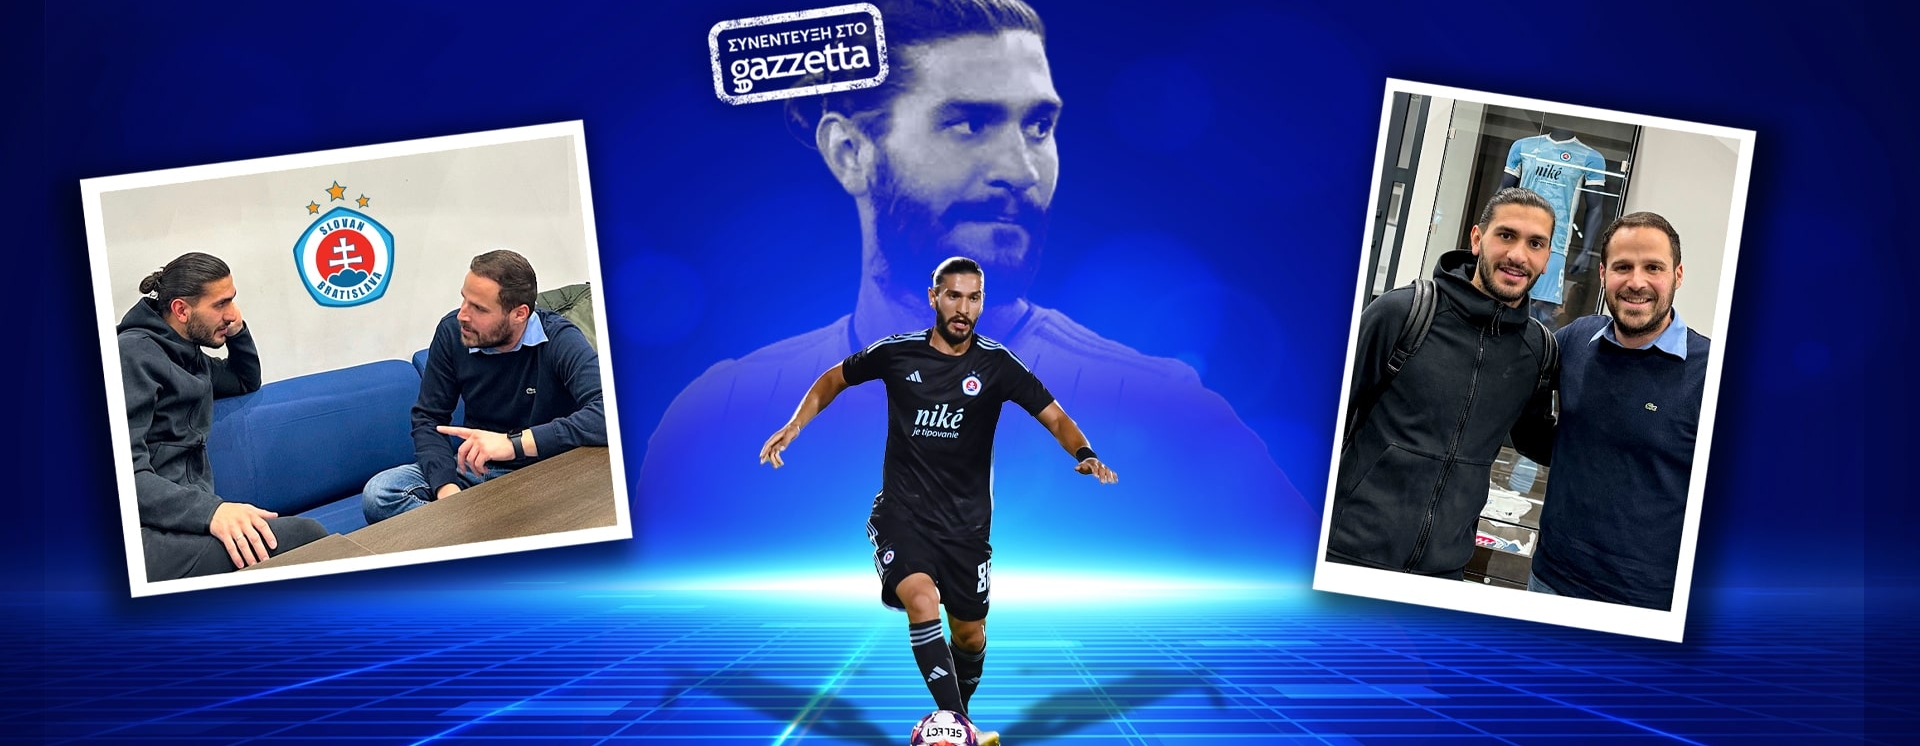 Σαββίδης στο Gazzetta: «Είχα αγανακτήσει με την Ελλάδα, σκεφτόμουν να σταματήσω το ποδόσφαιρο»